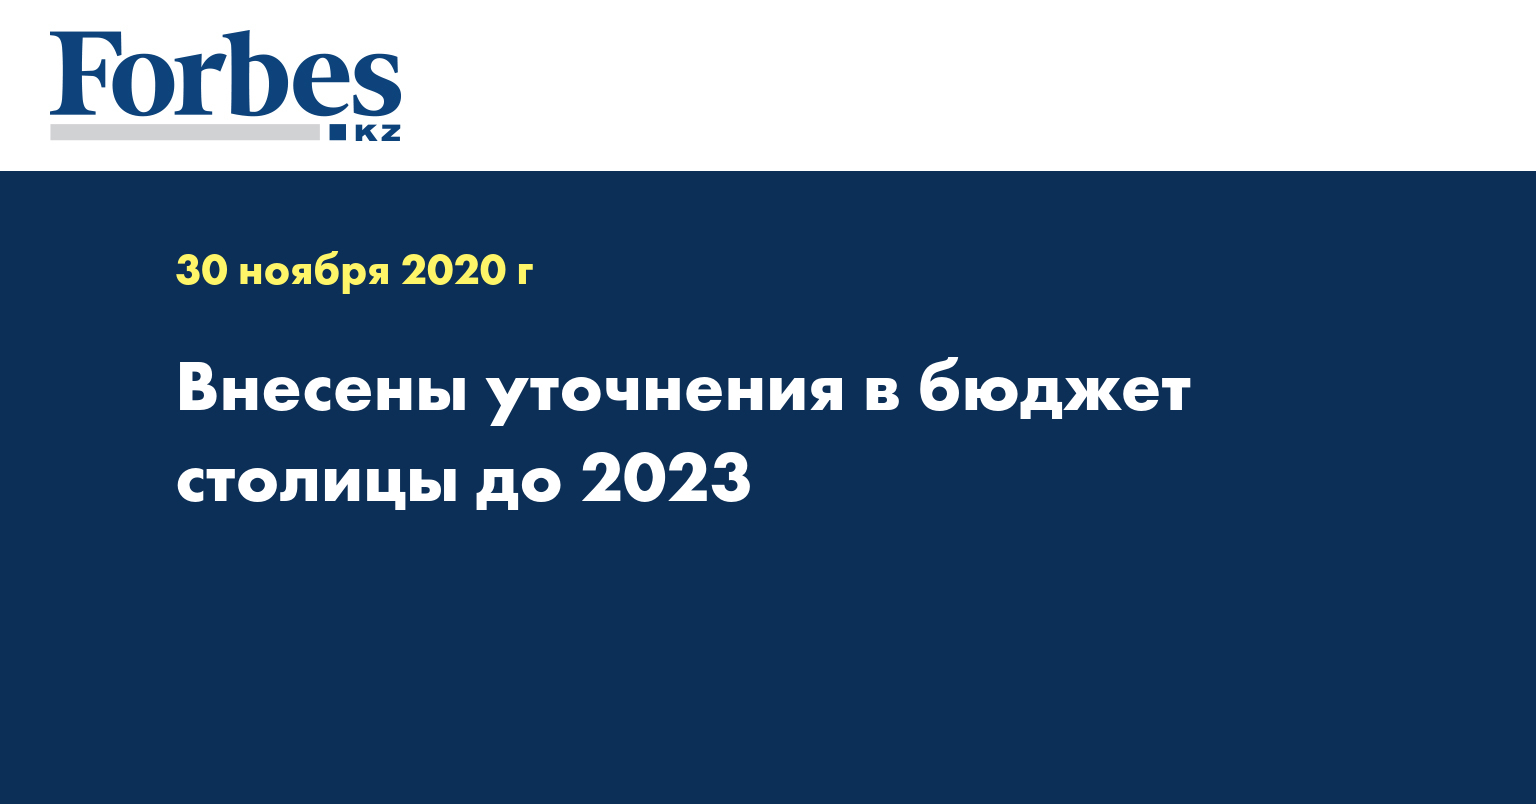  Внесены уточнения в бюджет столицы до 2023